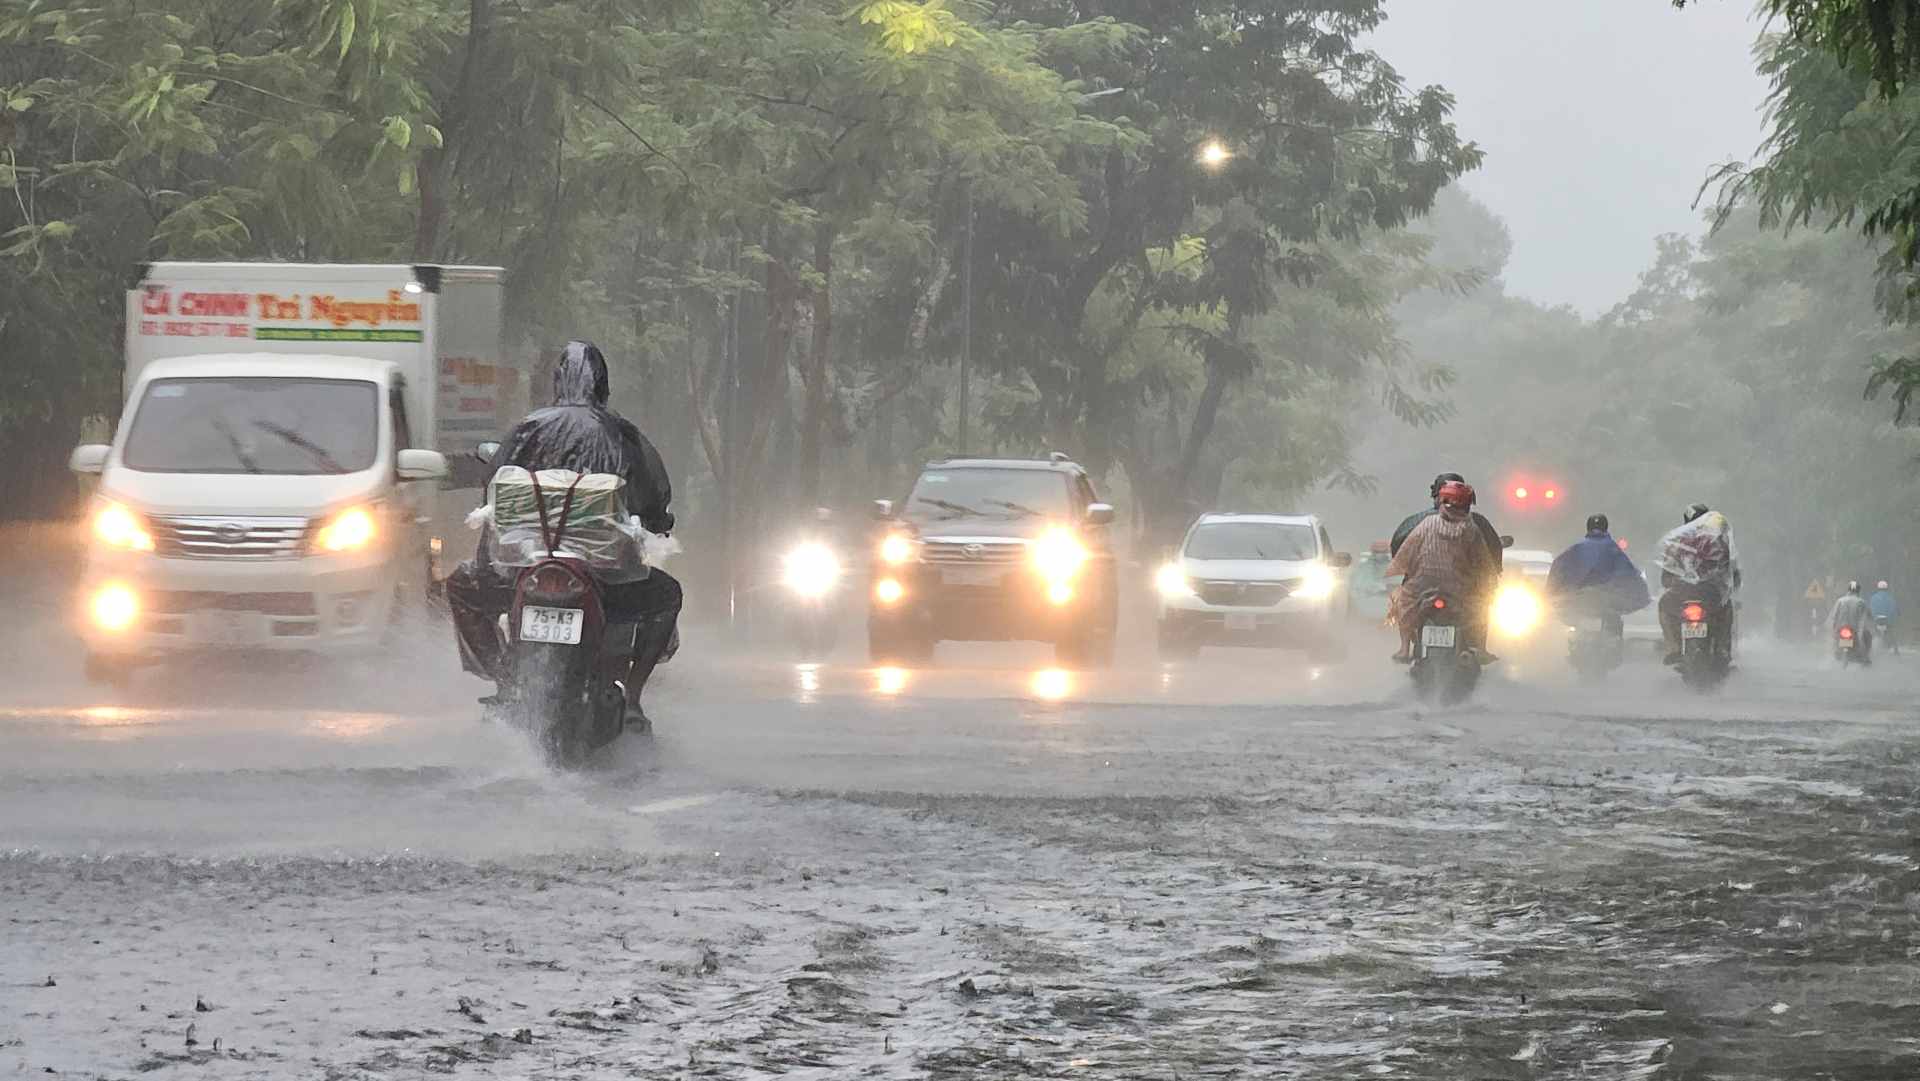 Theo Đài khí tượng thủy văn tỉnh Thừa Thiên Huế, trong 6 giờ qua (từ 01h00 - 07h00 ngày 25.9) khu vực tỉnh Thừa Thiên Huế đã có mưa vừa, mưa to, có nơi mưa rất to.